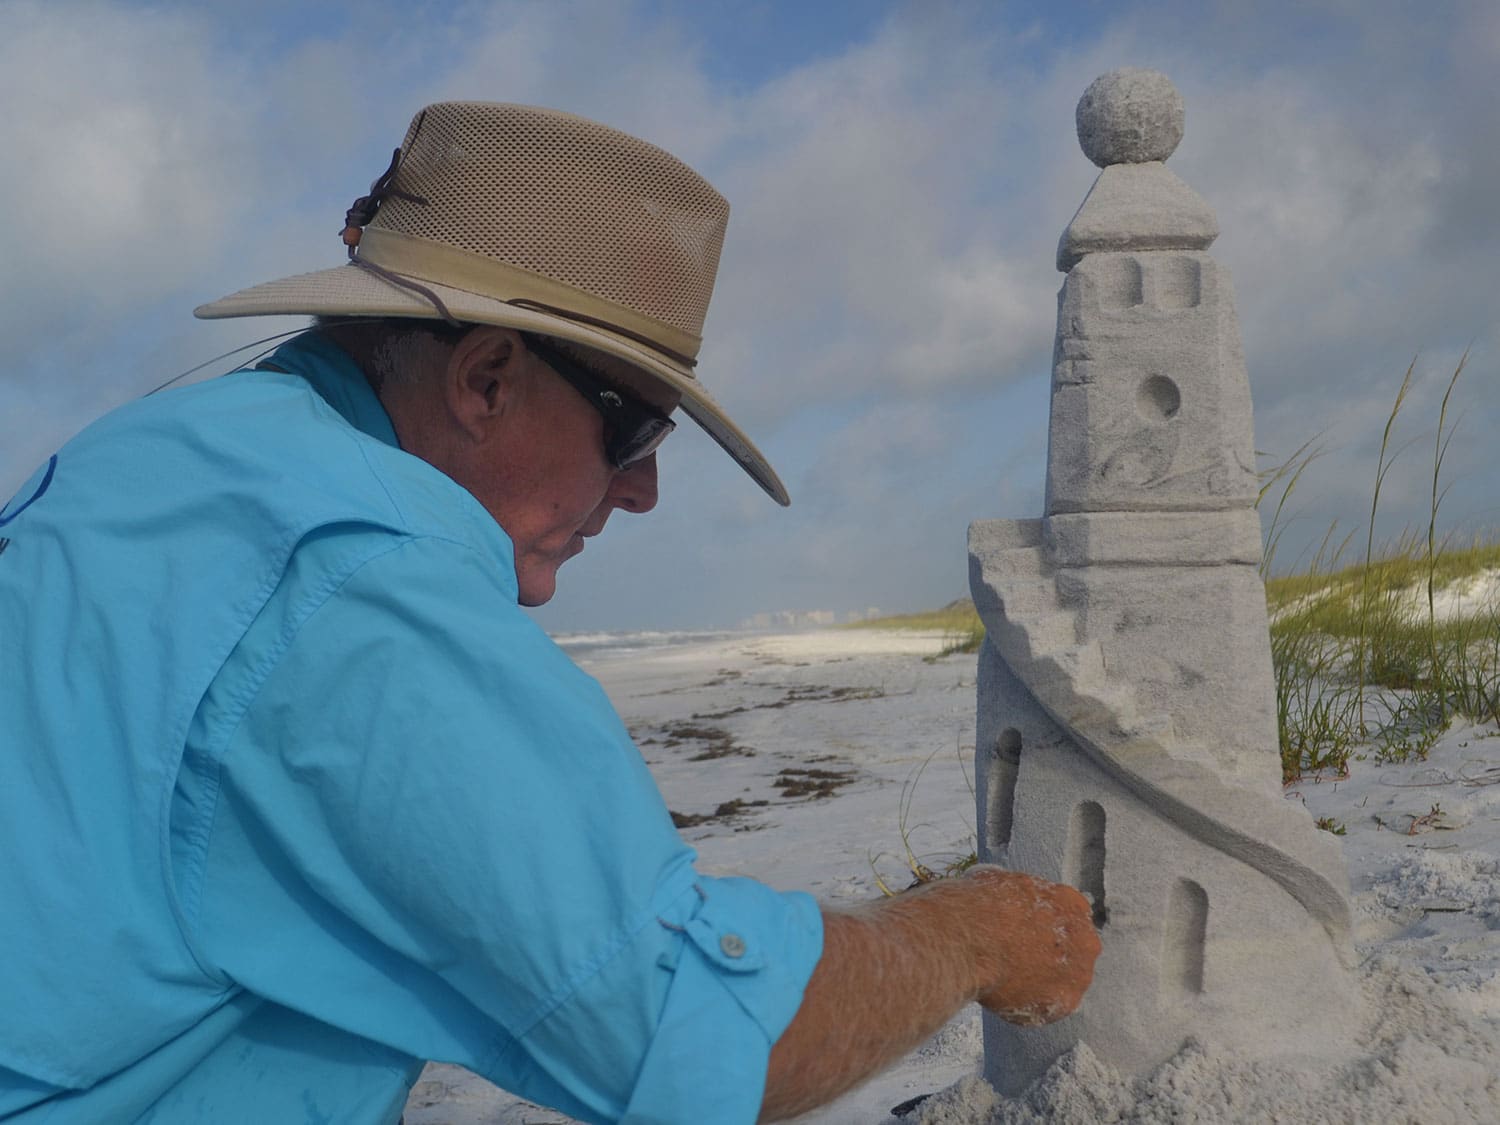 Rick Mungeam building an intricate sand sculpture